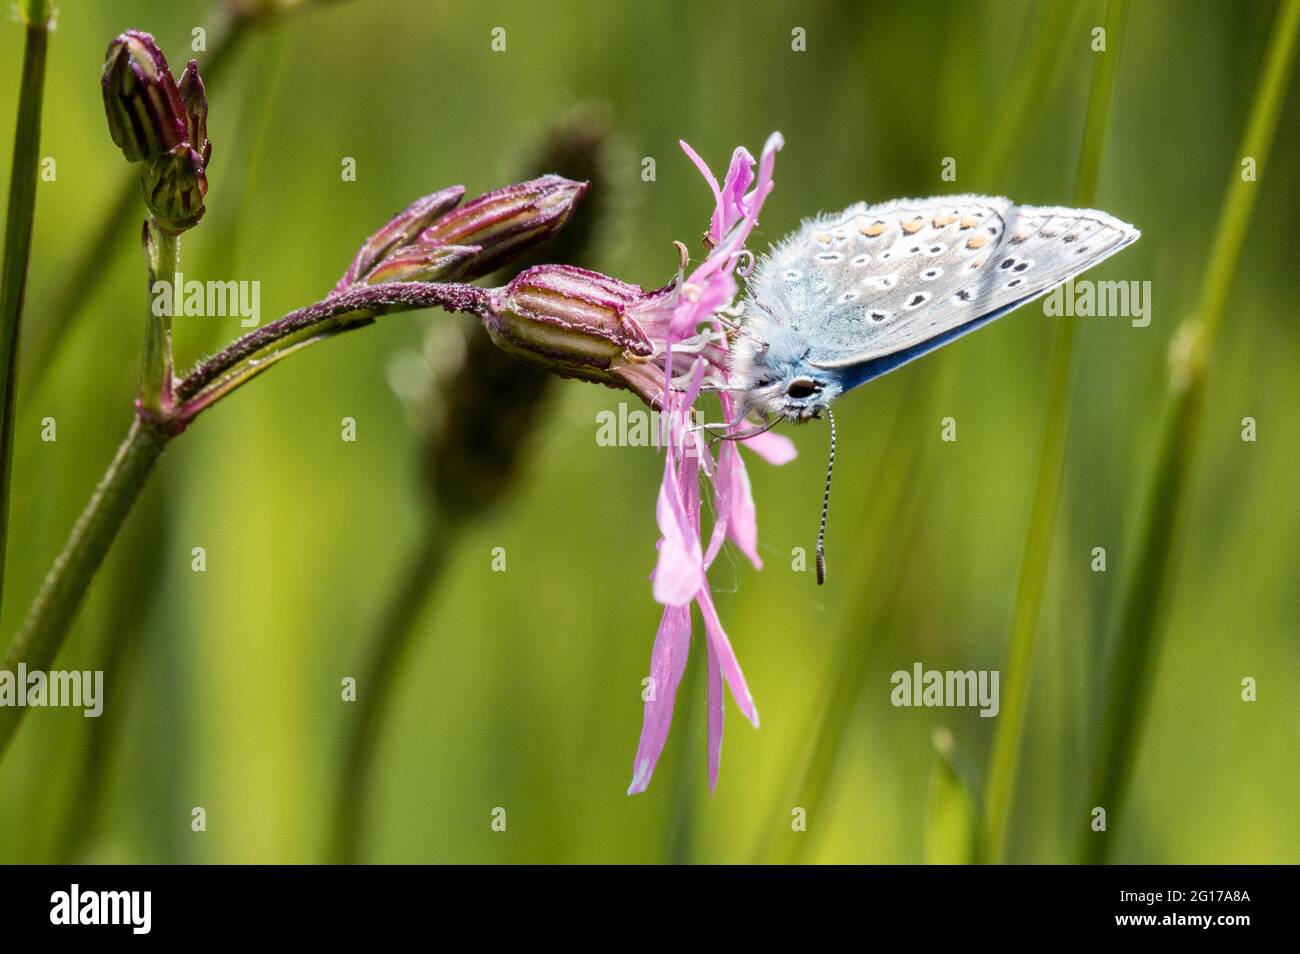 Mâle papillon bleu commun nectaring sur la fleur de robin dentelée Banque D'Images